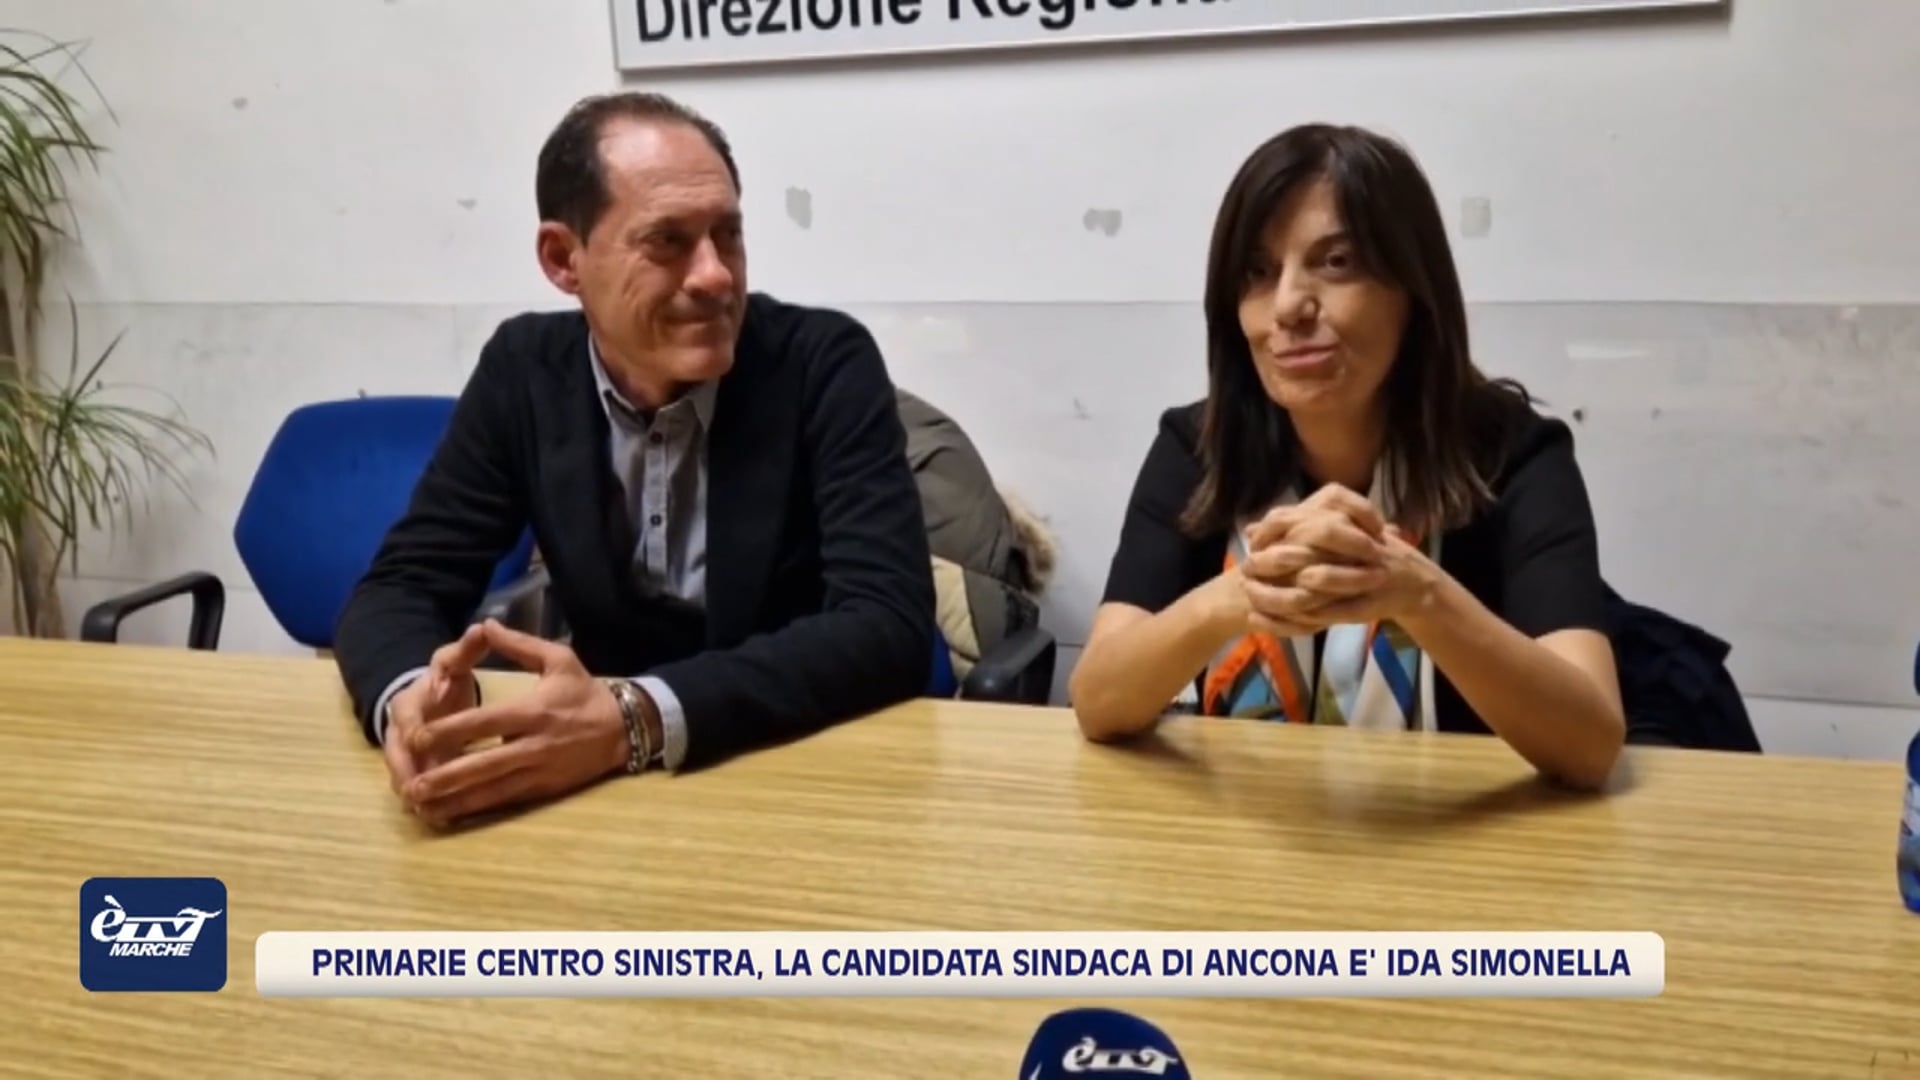 Primarie centro sinistra, Ida Simonella candidata sindaca di Ancona - VIDEO